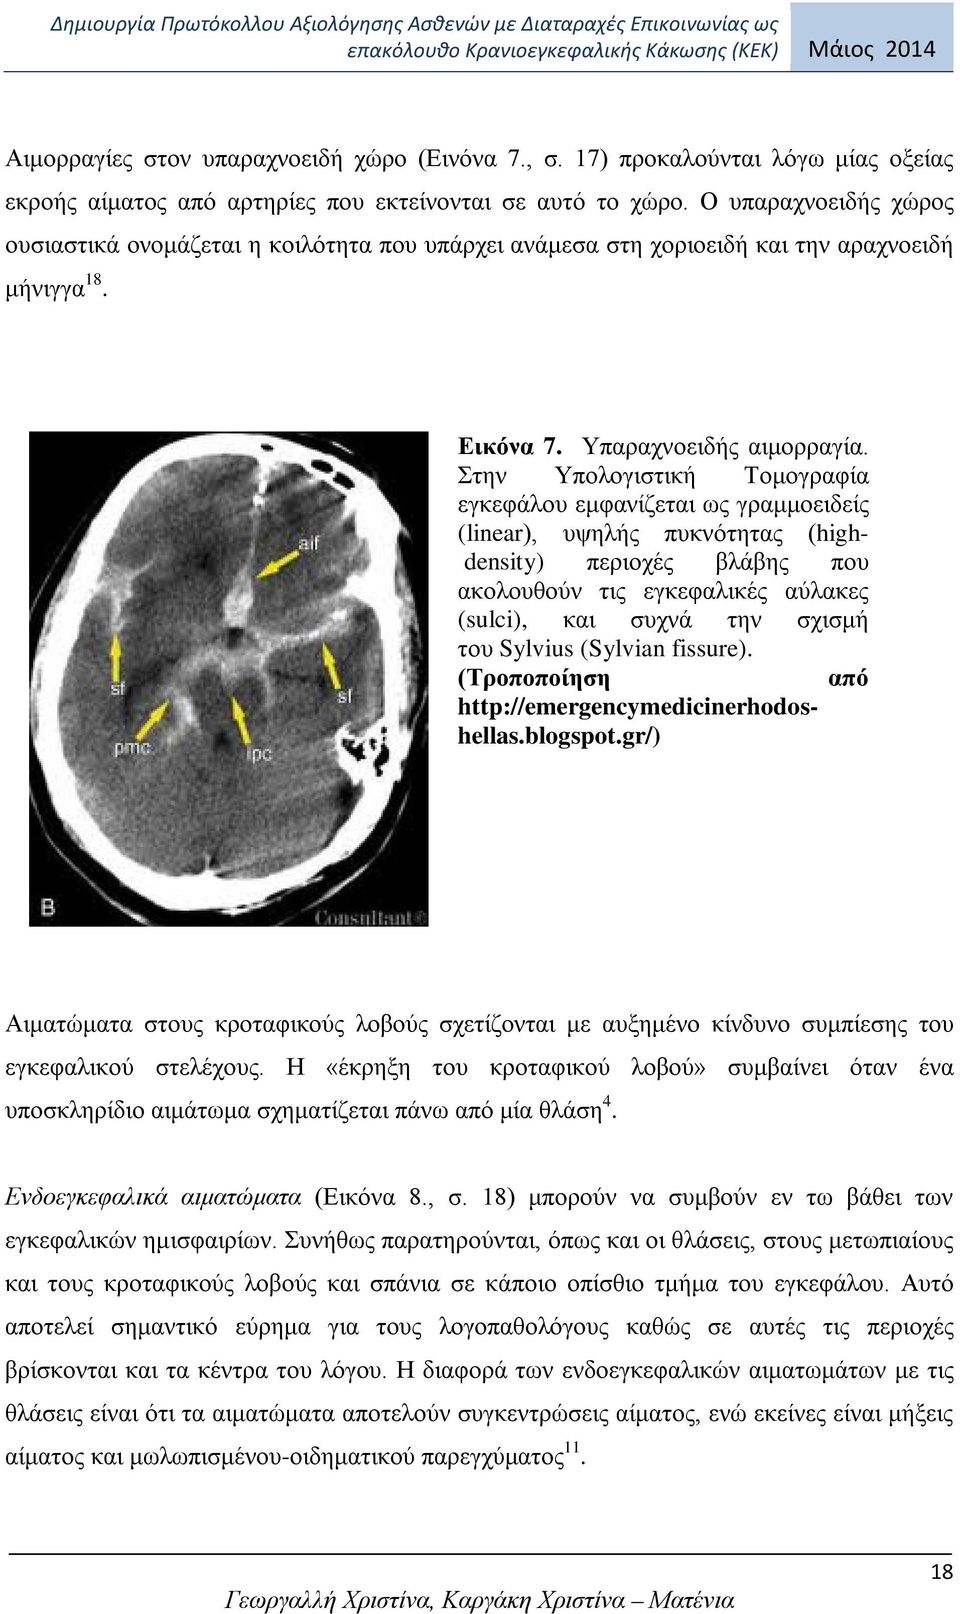 Στην Υπολογιστική Τομογραφία εγκεφάλου εμφανίζεται ως γραμμοειδείς (linear), υψηλής πυκνότητας (highdensity) περιοχές βλάβης που ακολουθούν τις εγκεφαλικές αύλακες (sulci), και συχνά την σχισμή του